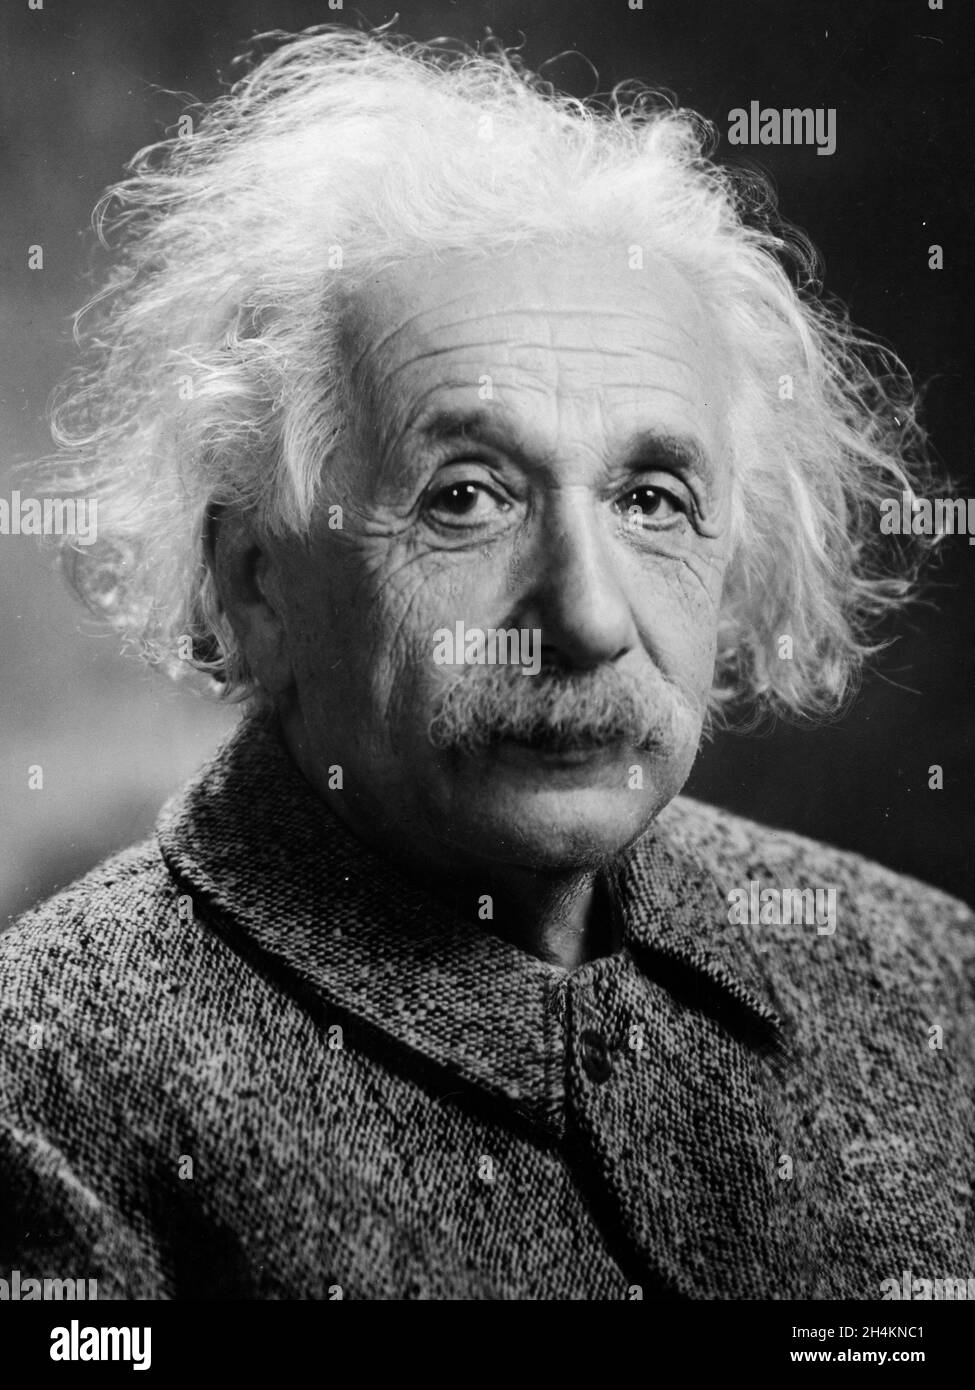 USA - 1947 - Portrait of Albert Einstein taken in 1947 in the USA - Photo: Geopix/Oren Turner Stock Photo